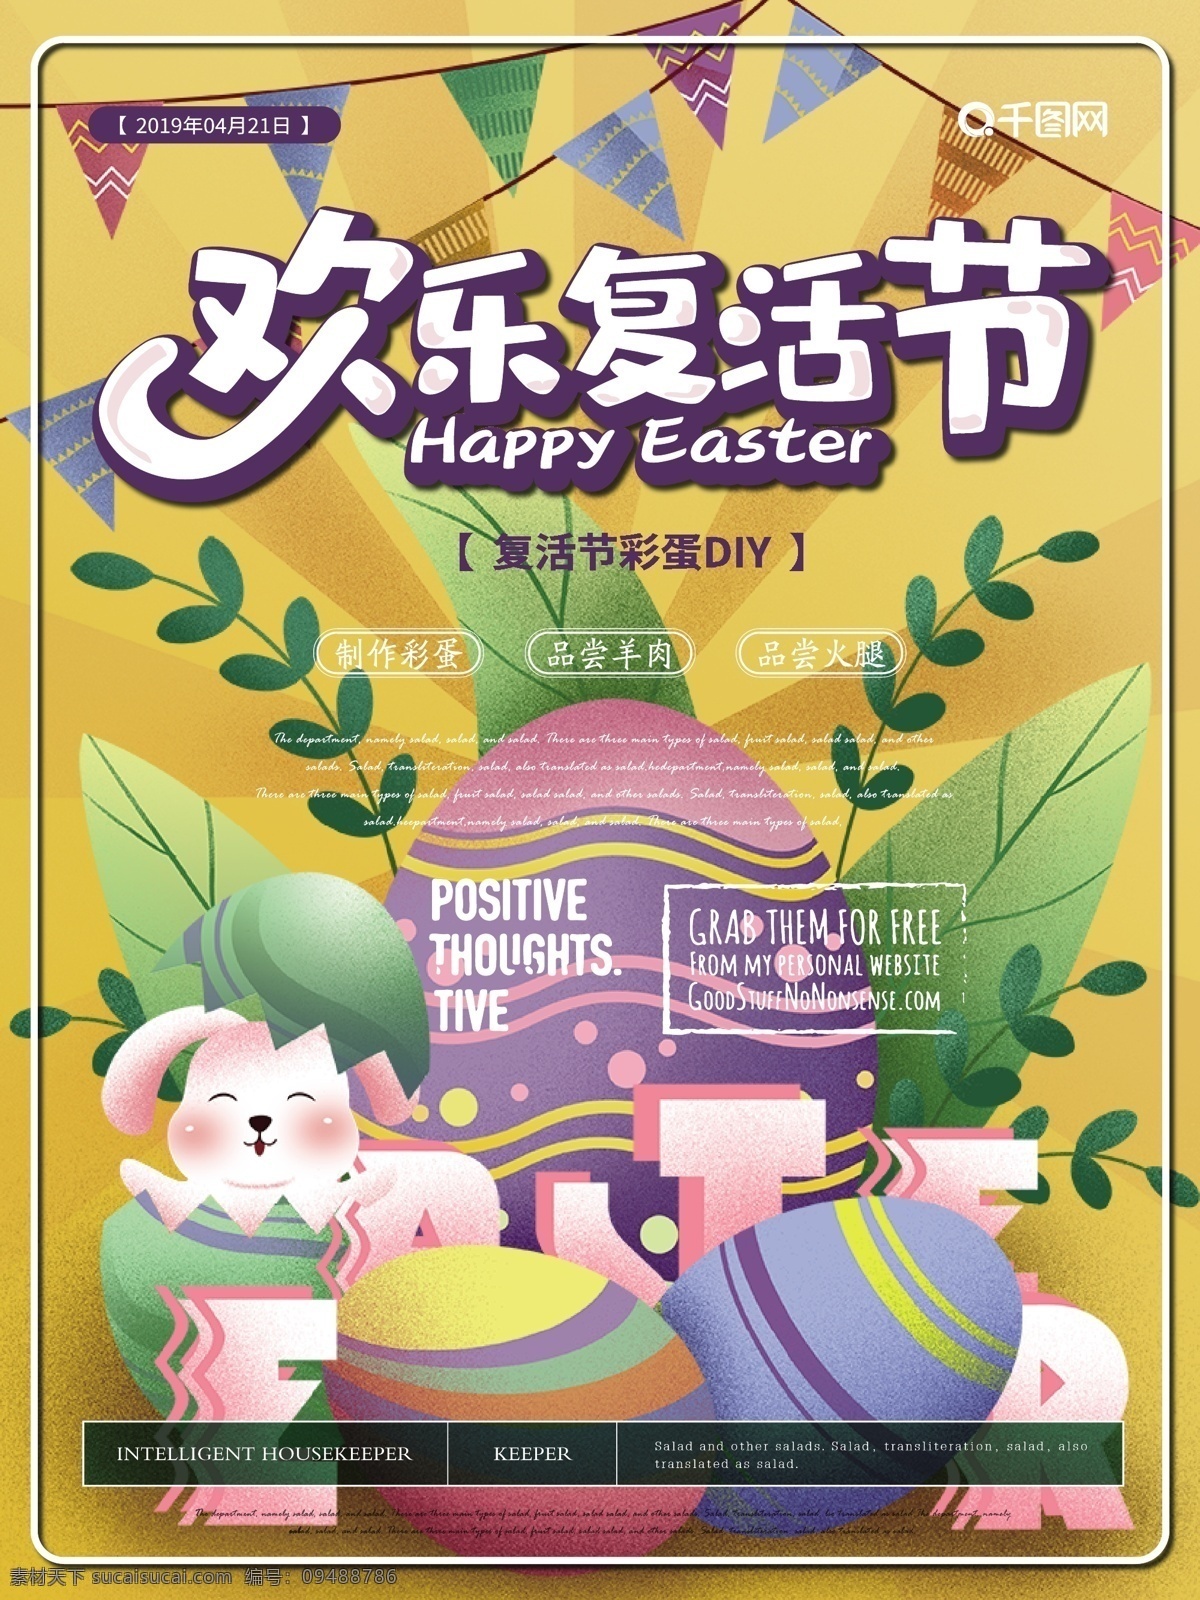 简约 卡通 欢乐 复活节 海报 简约风 可爱 欢乐复活节 主题 节日 彩蛋 兔子 欢乐氛围